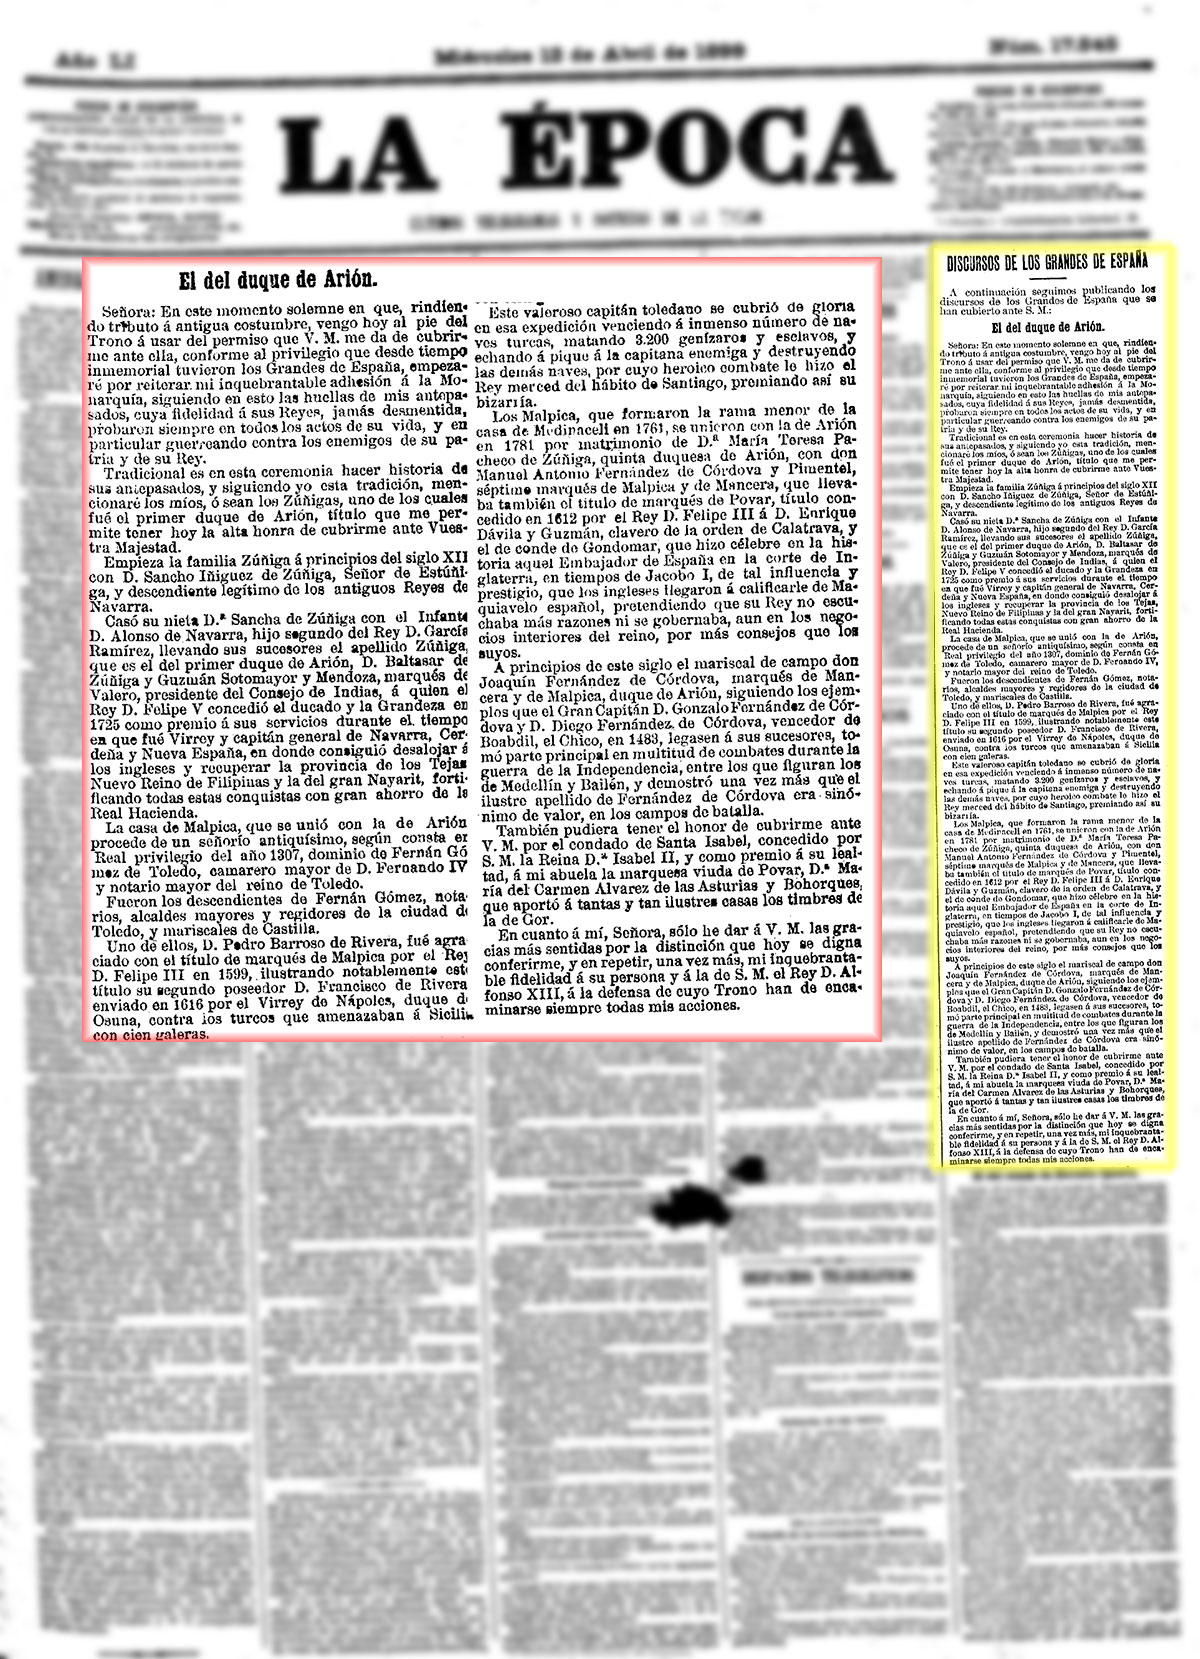 La Época 12-4-1899, n.º 17.545, página 1. Discurso del duque de Arión ante Alfonso XII